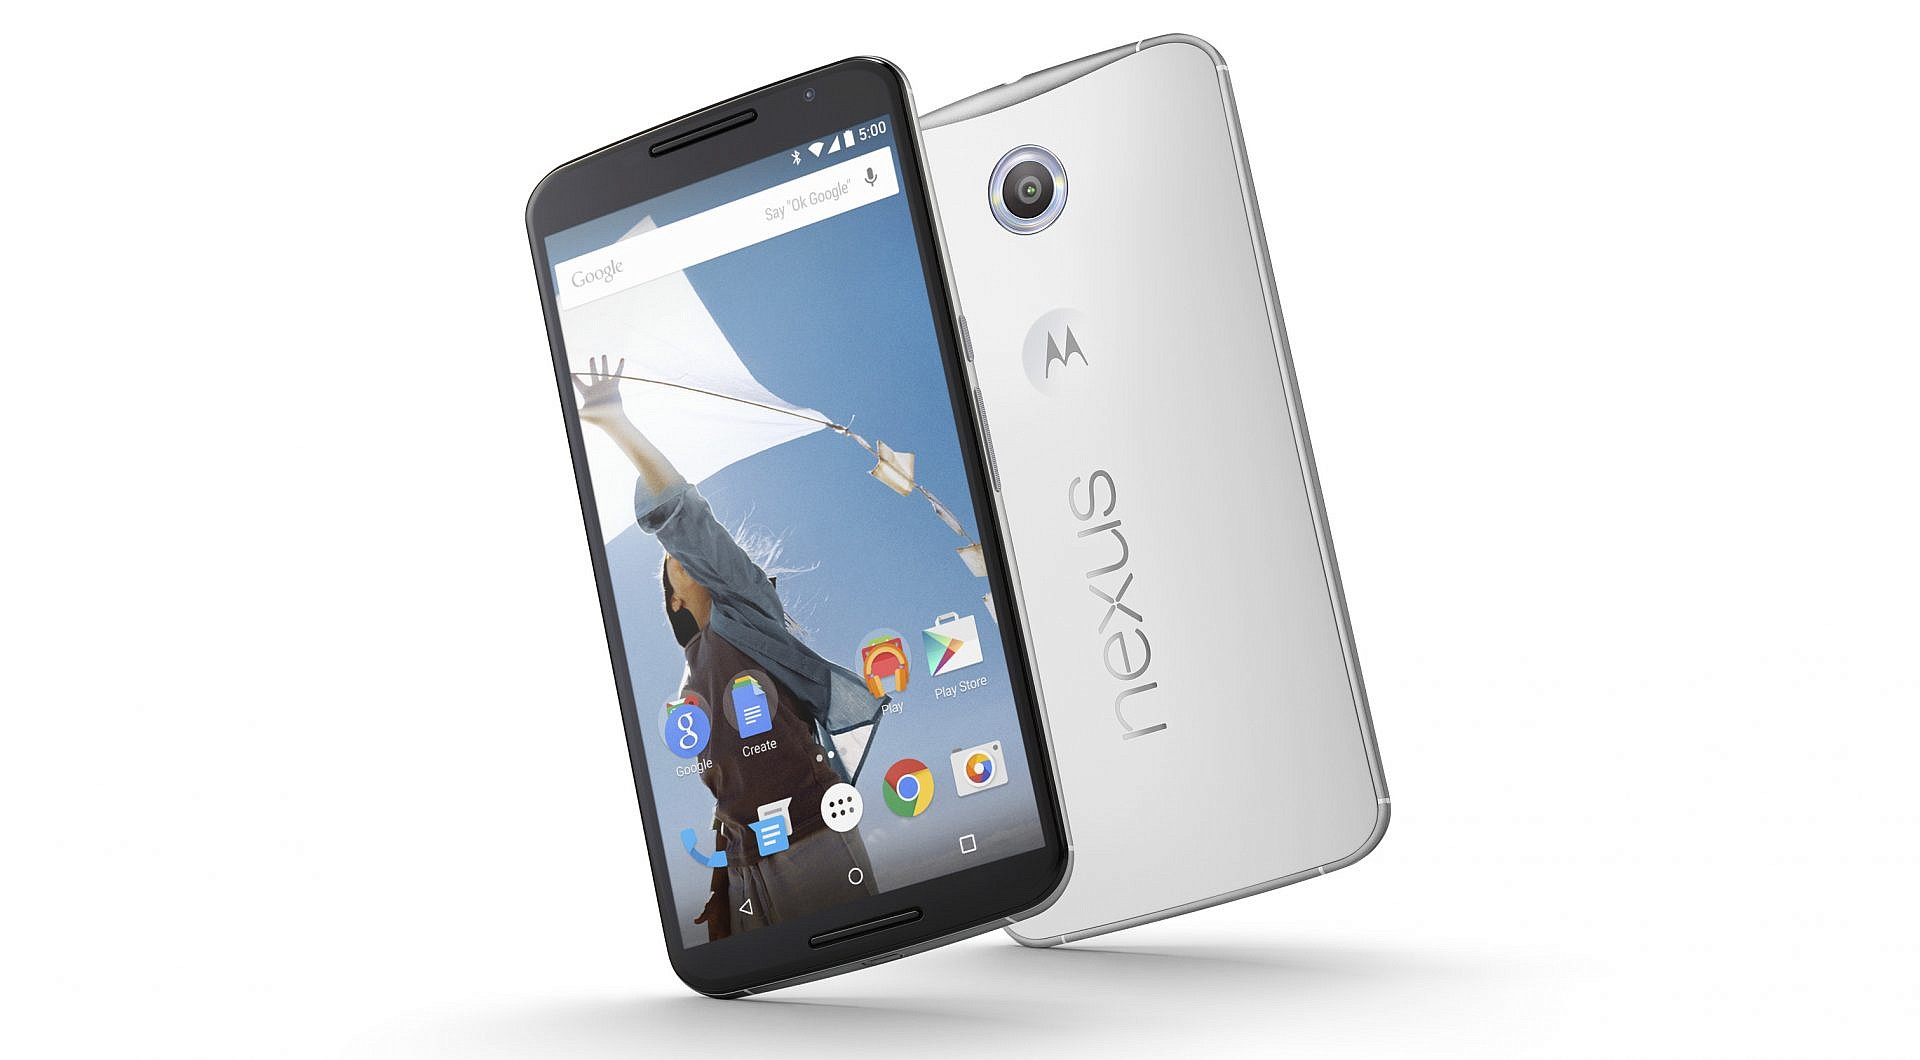 ถึงจะเก่าแต่ก็เก๋าได้!!! ครีเอเตอร์ผลิตโฆษณา Nexus 6 ในรูปแบบของ Google Pixel